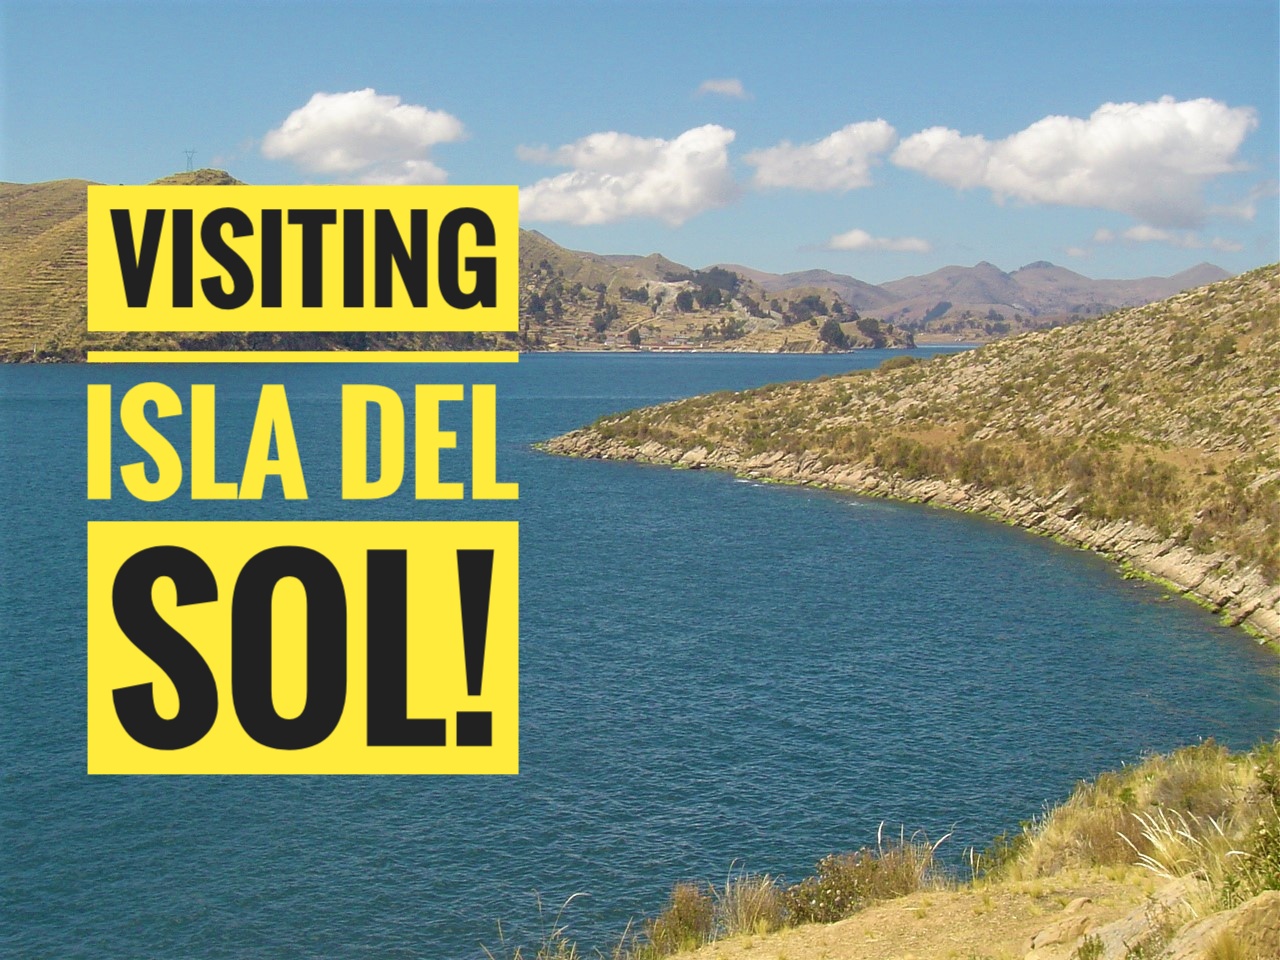 Visiting Isla del Sol!